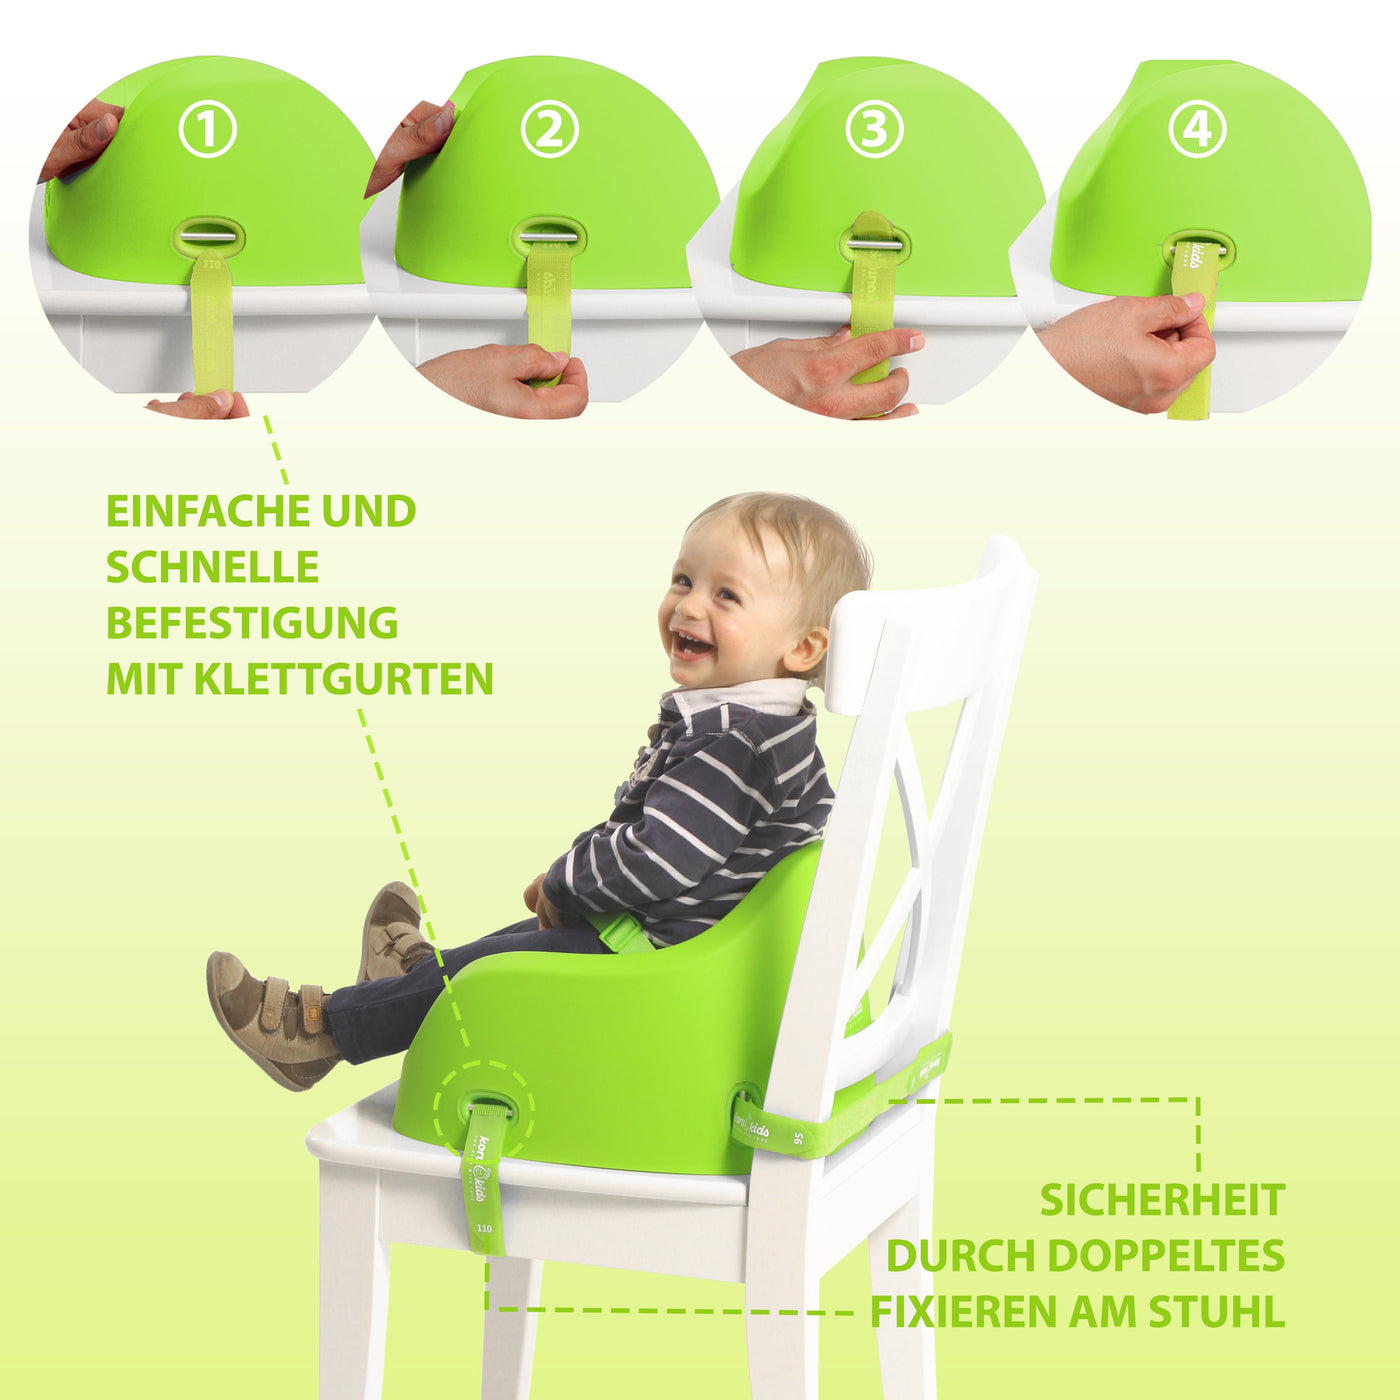 Grün Stuhl Für Kinder | Kinder Sitzerhöhung | Koru Kids